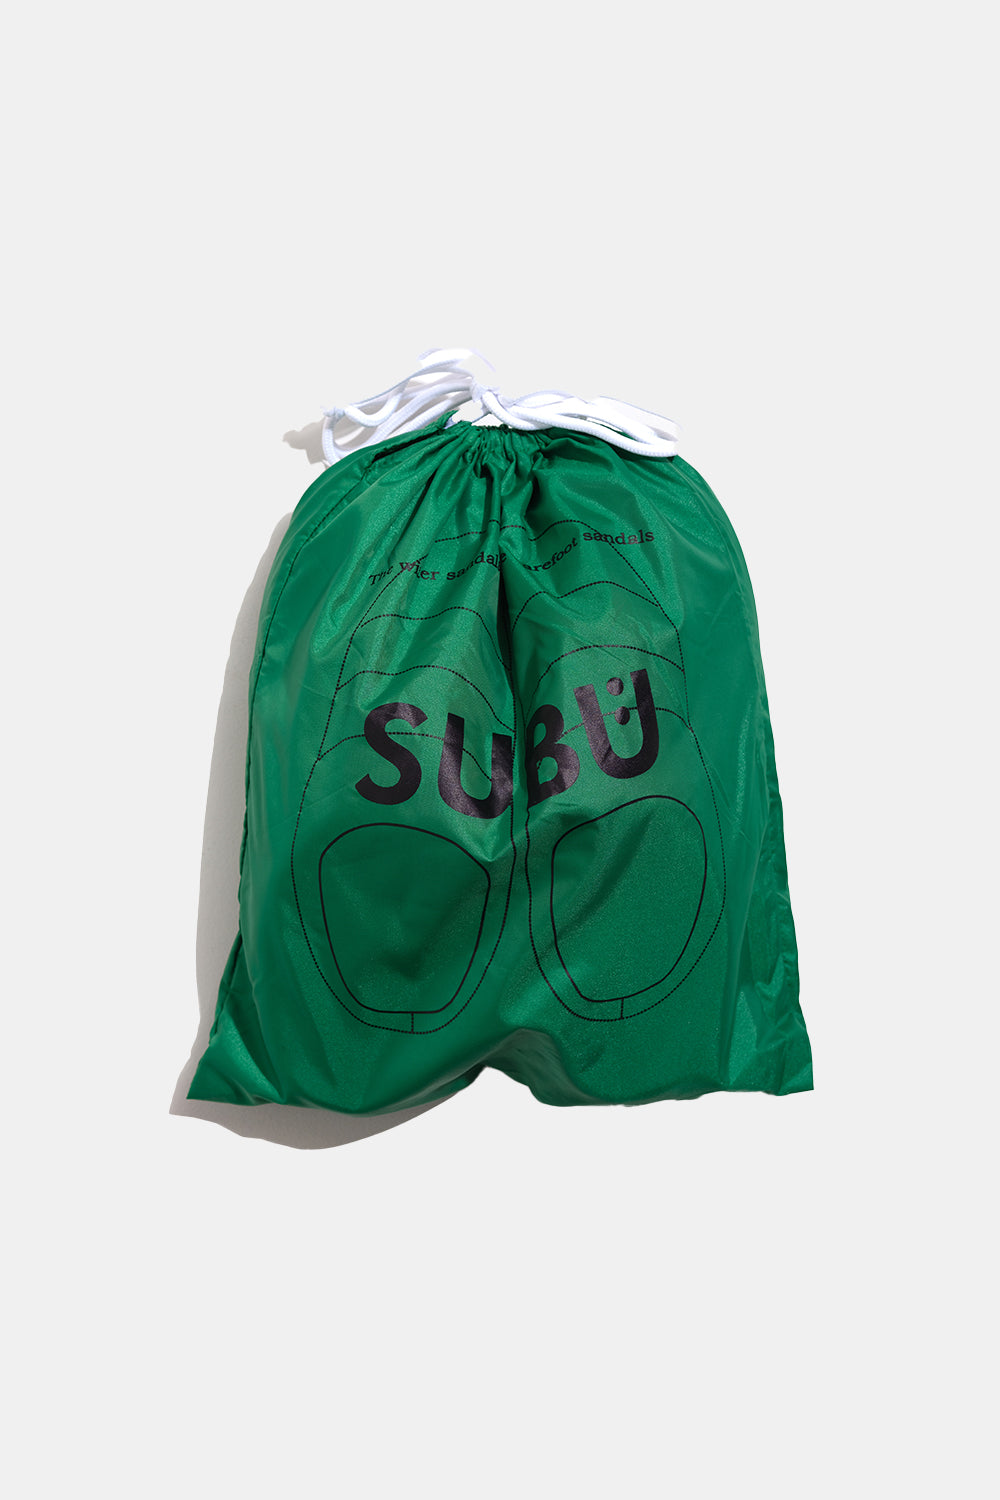 SUBU Indoor Outdoor Slippers (Green)